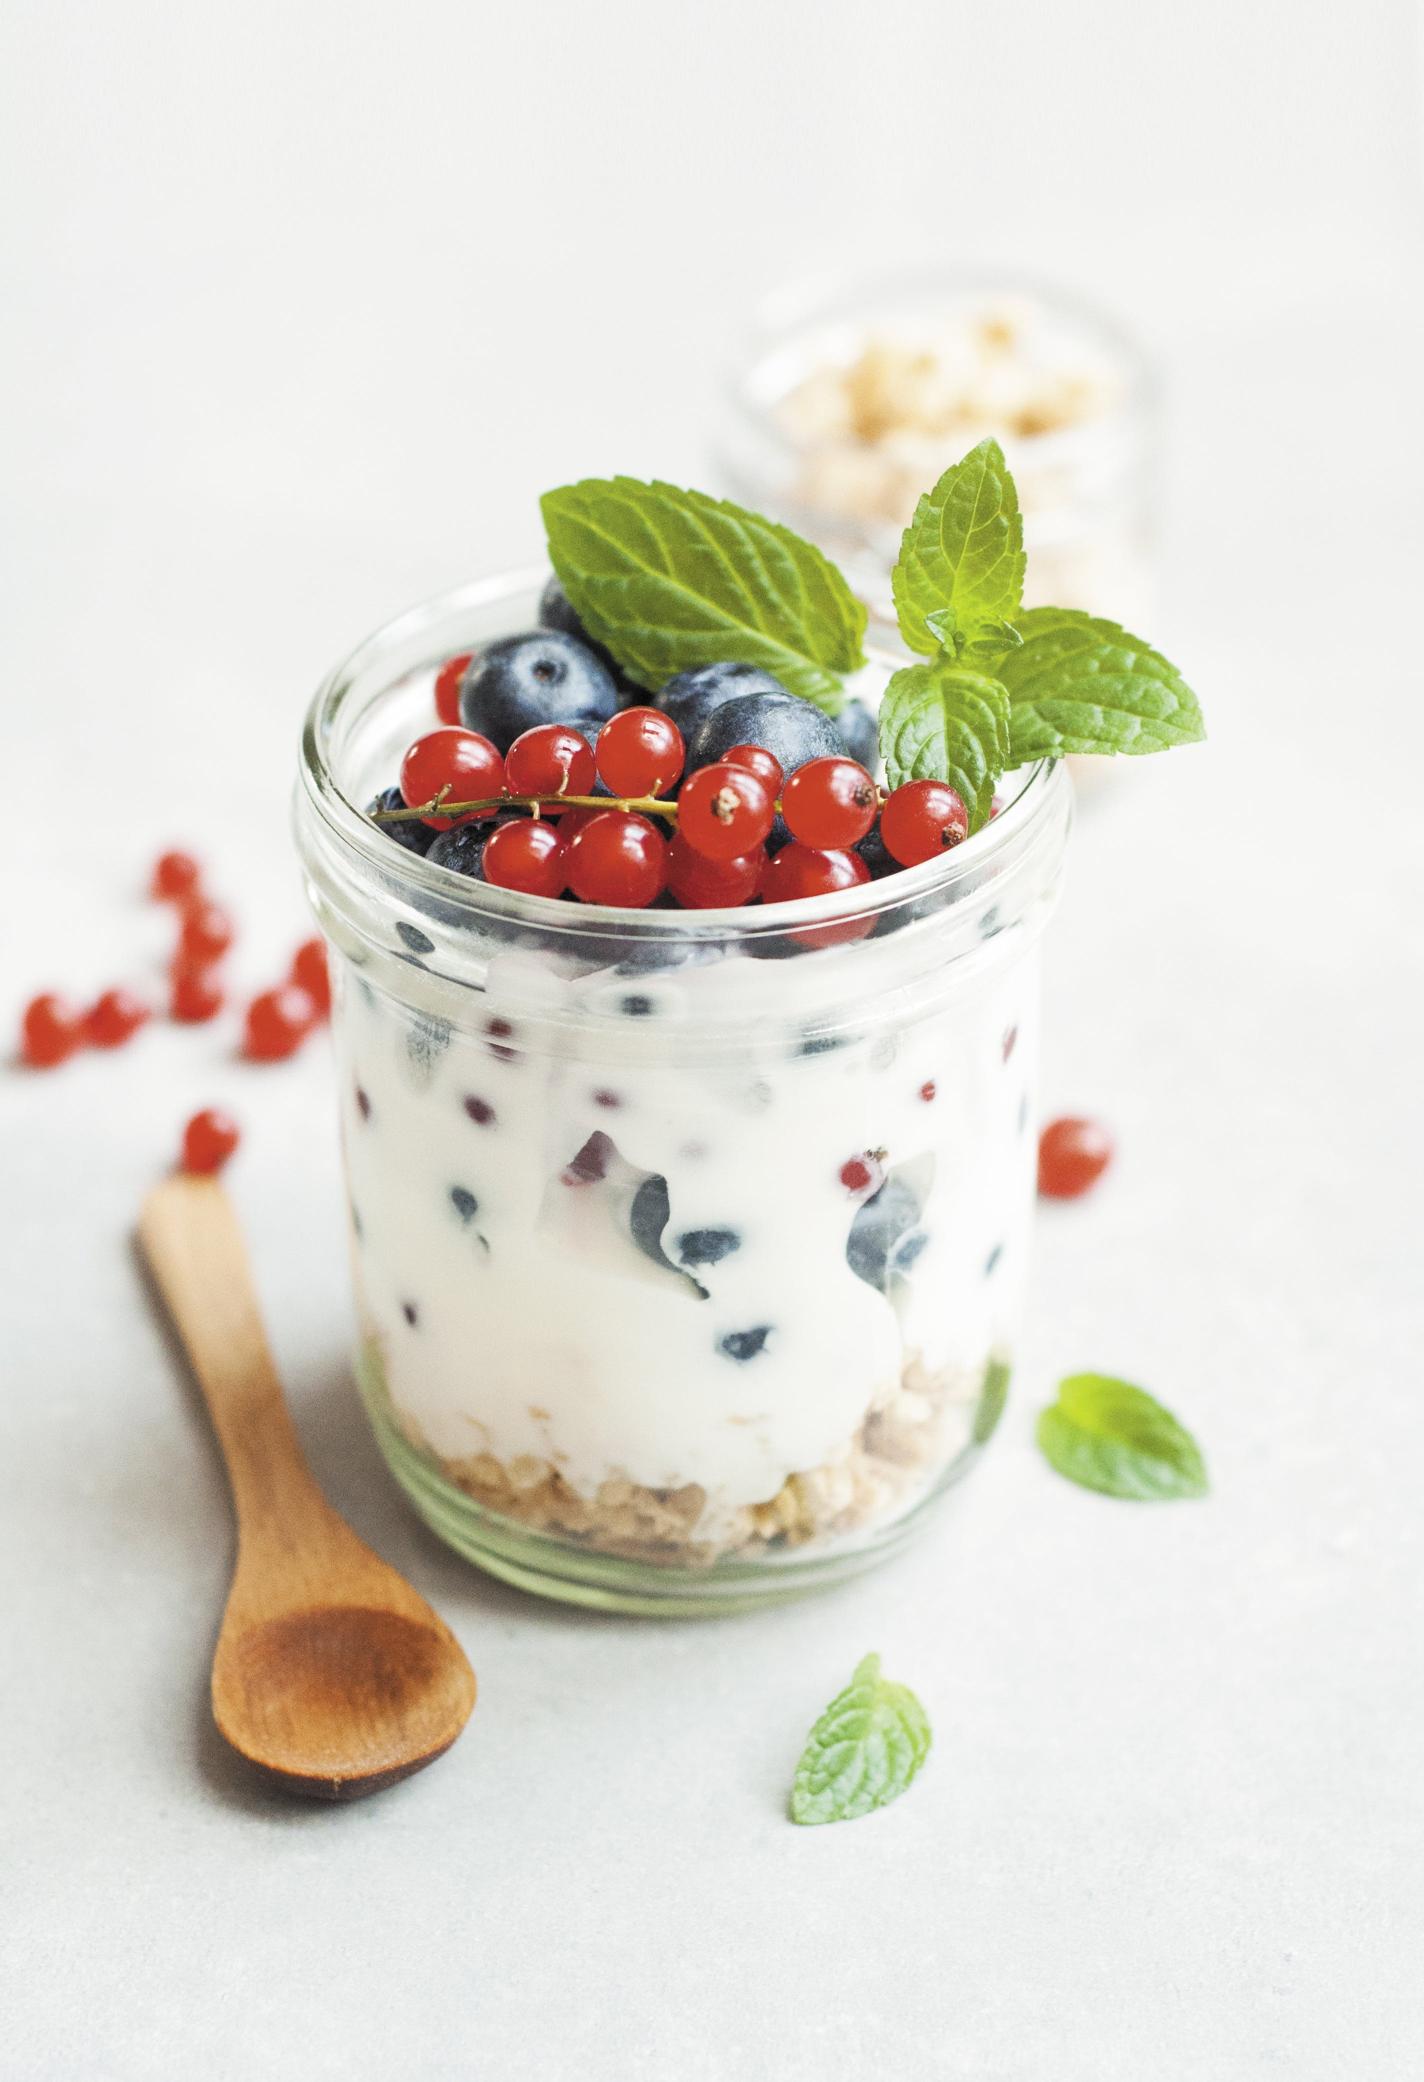 Benefici dello yogurt senza lattosio per la salute intestinale